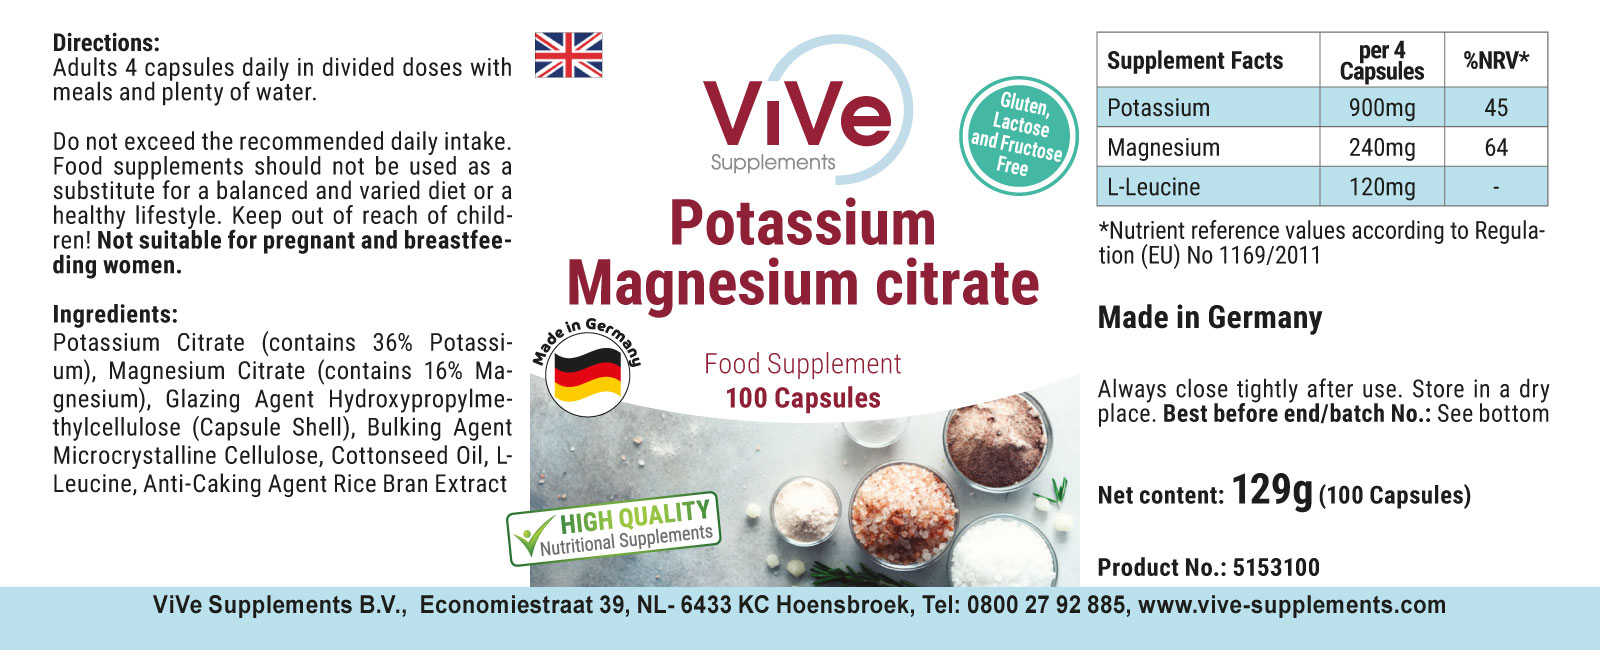 Potassium magnesium citrate